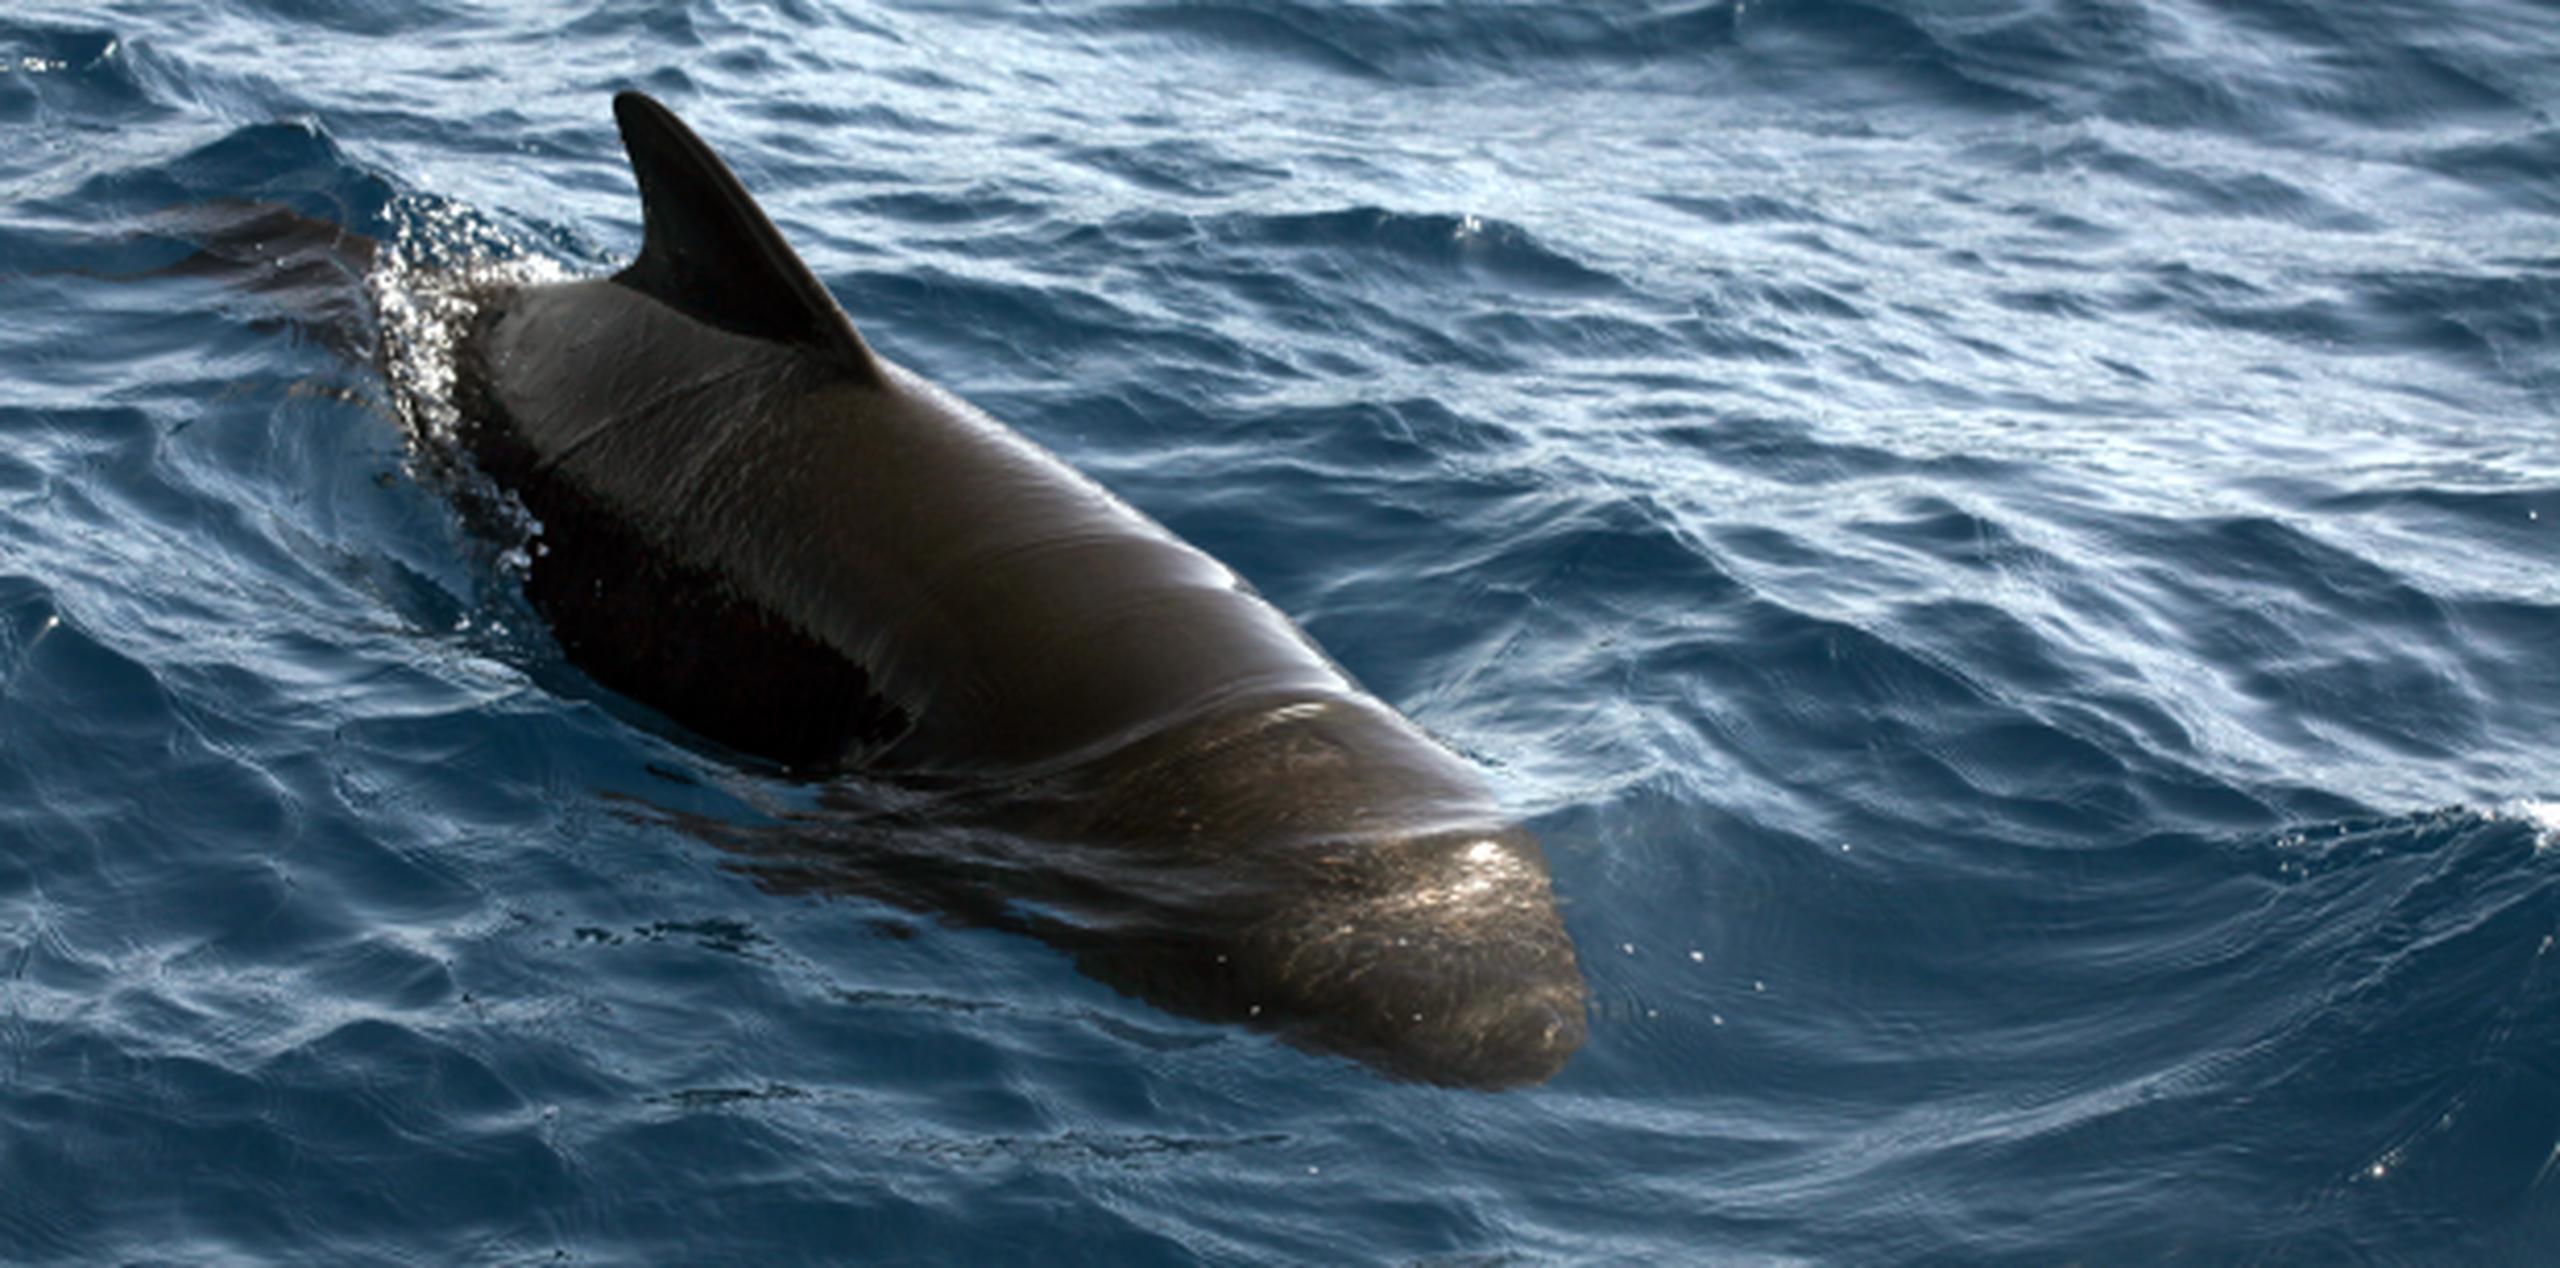 La ballena piloto está protegida por normativa federal y por la Ley de Vida Silvestre a nivel estatal. (Shutterstock)